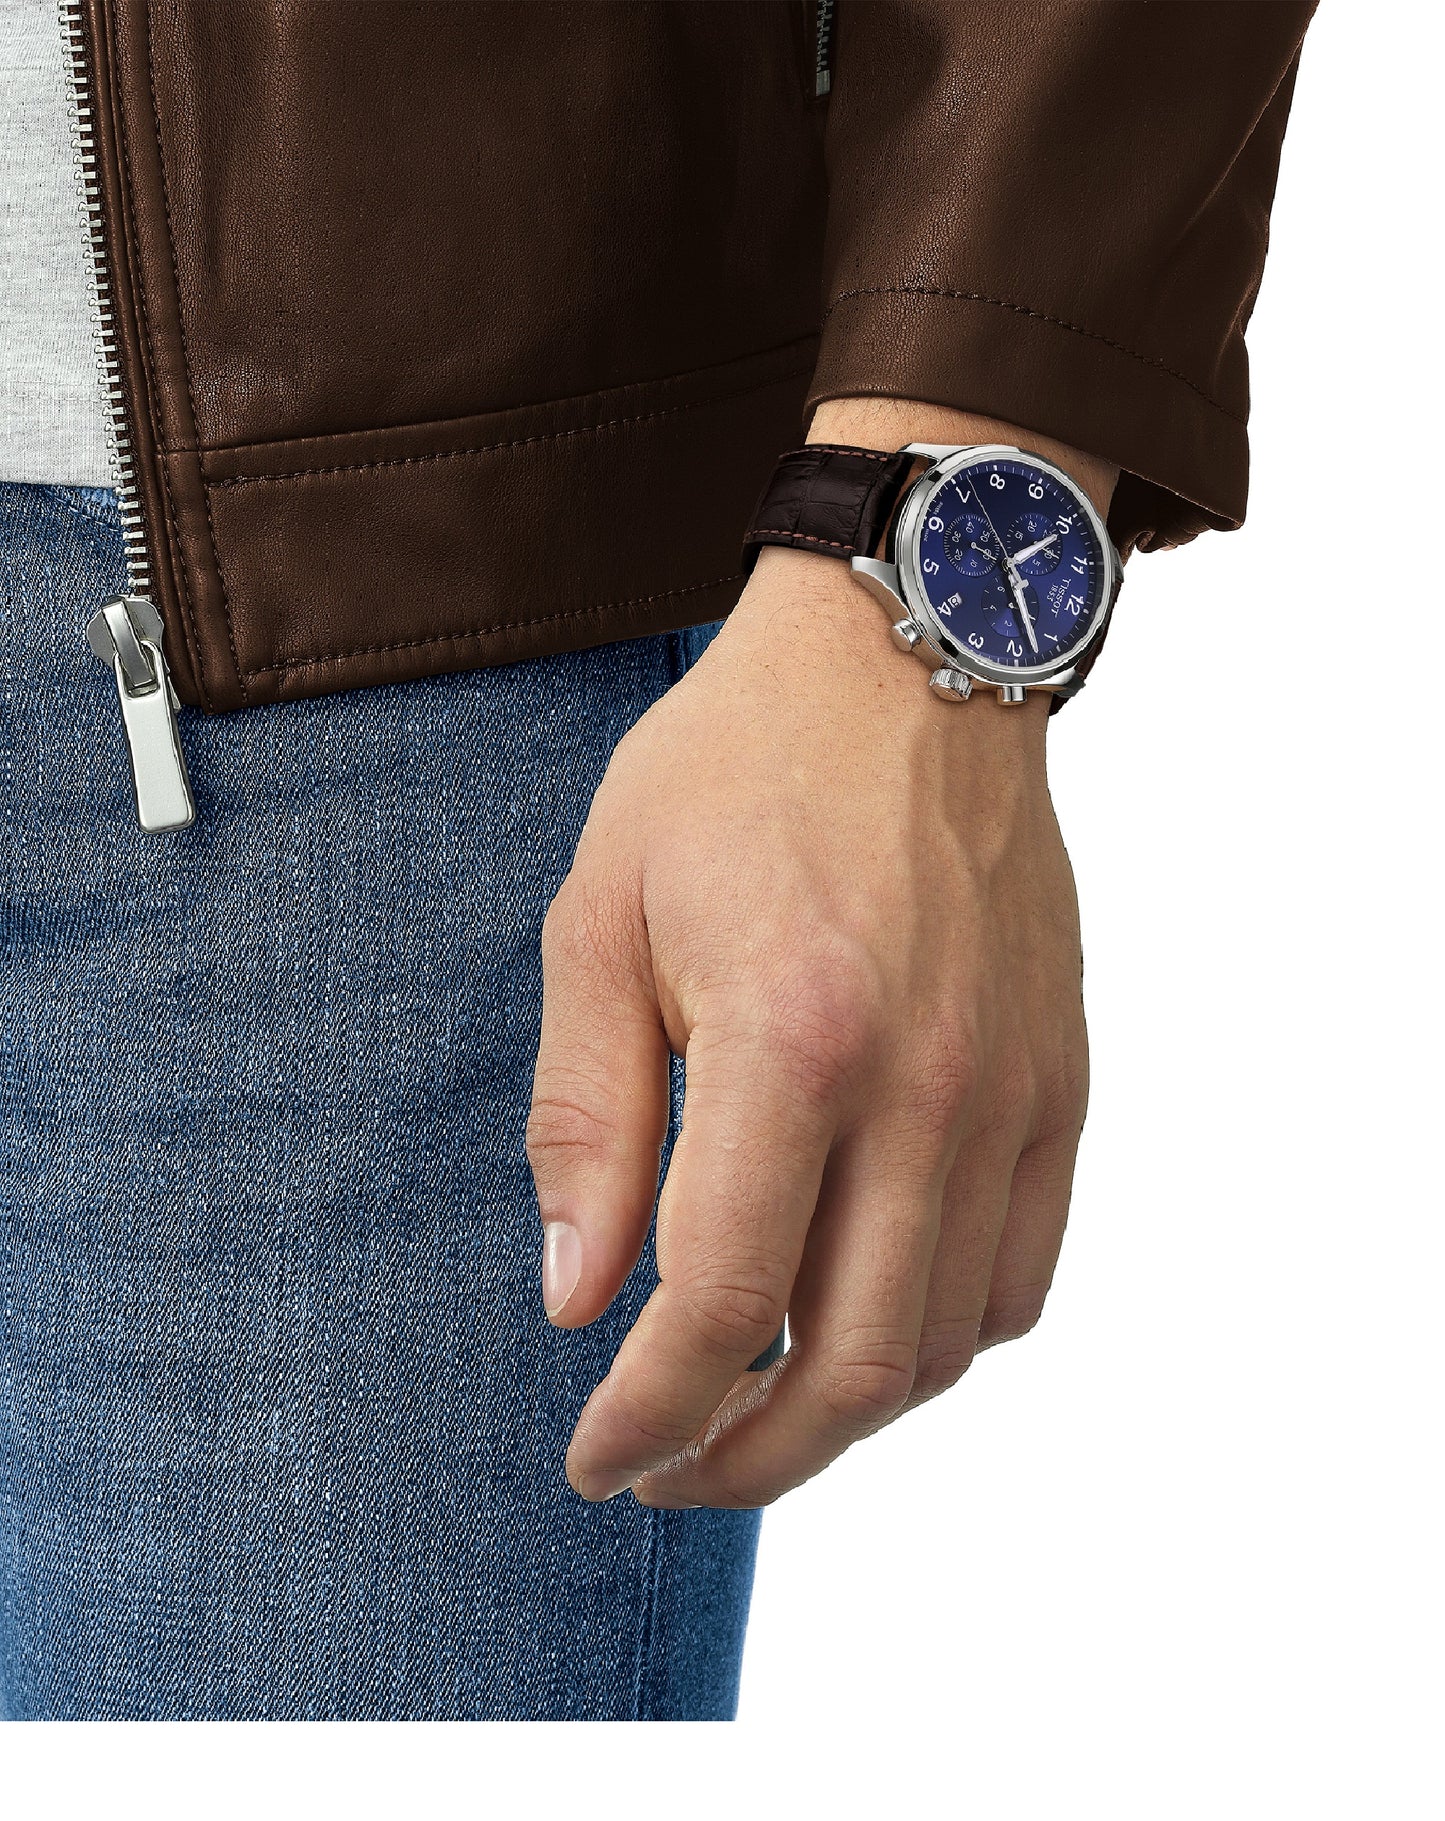 Tissot T116.617.16.047.00 TISSOT Chrono XL BROWN Strap Blue Dial Watch